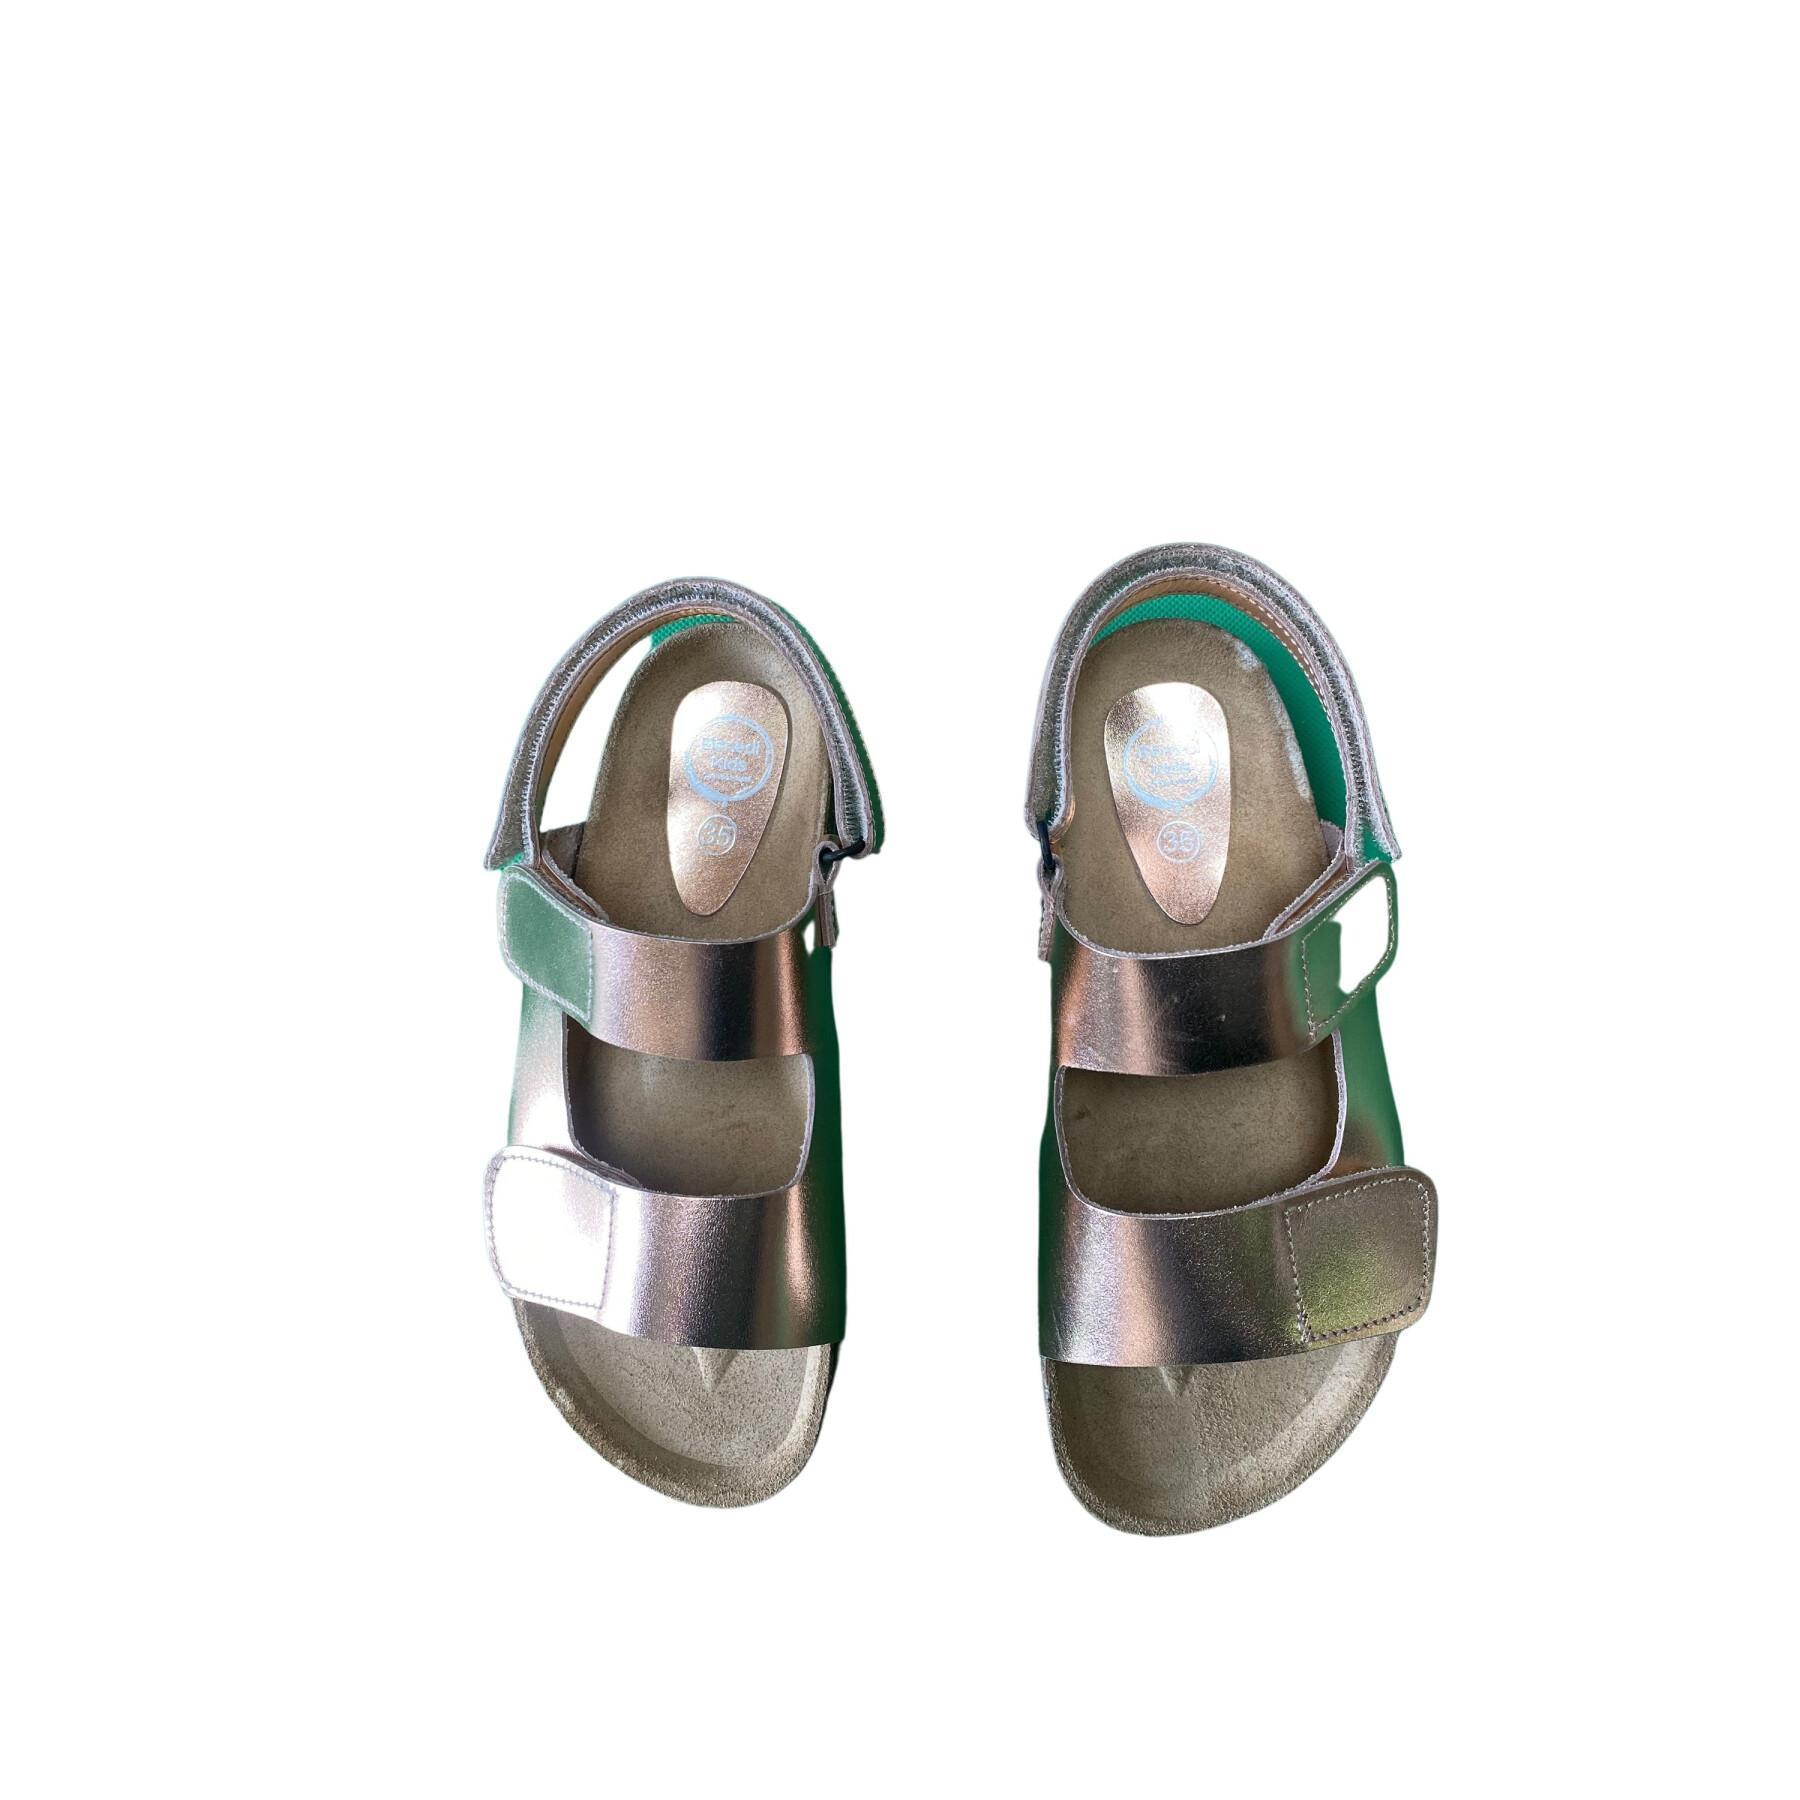 Children's sandals Benedi Laminados